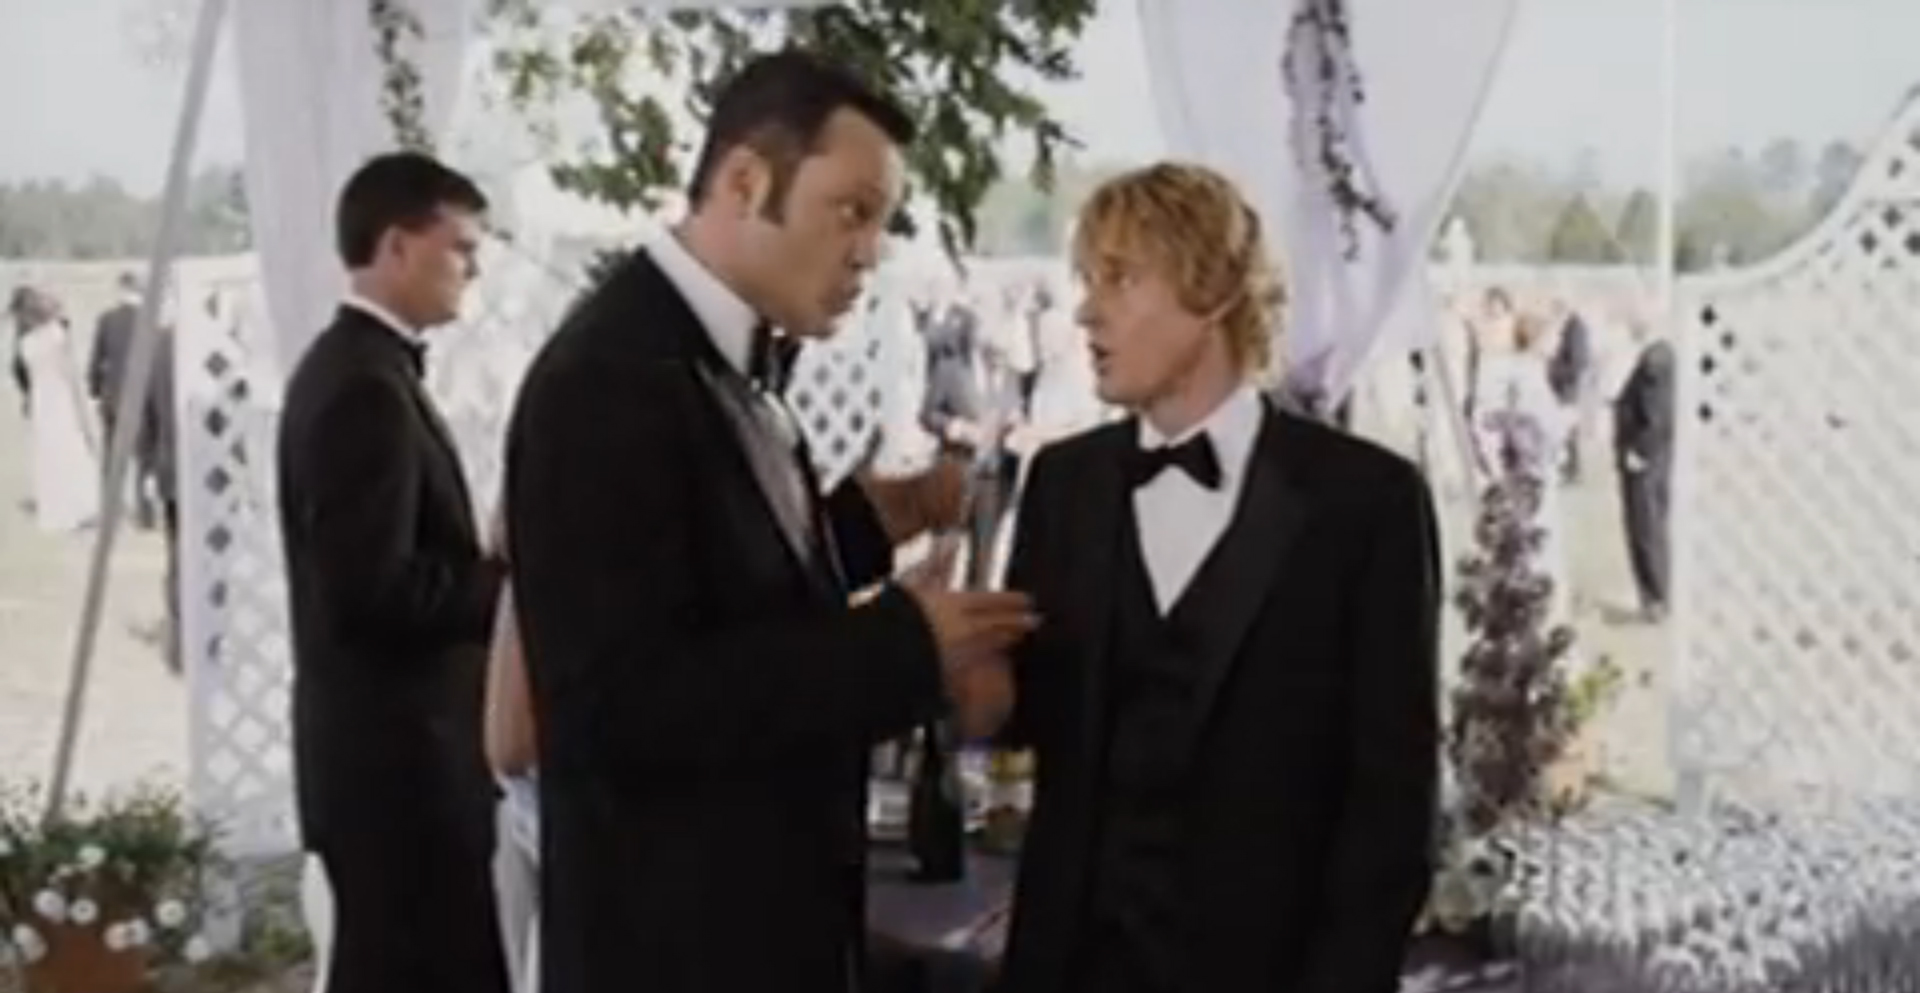 Vince Vaughn and Owen Wilson in "Wedding Crashers".